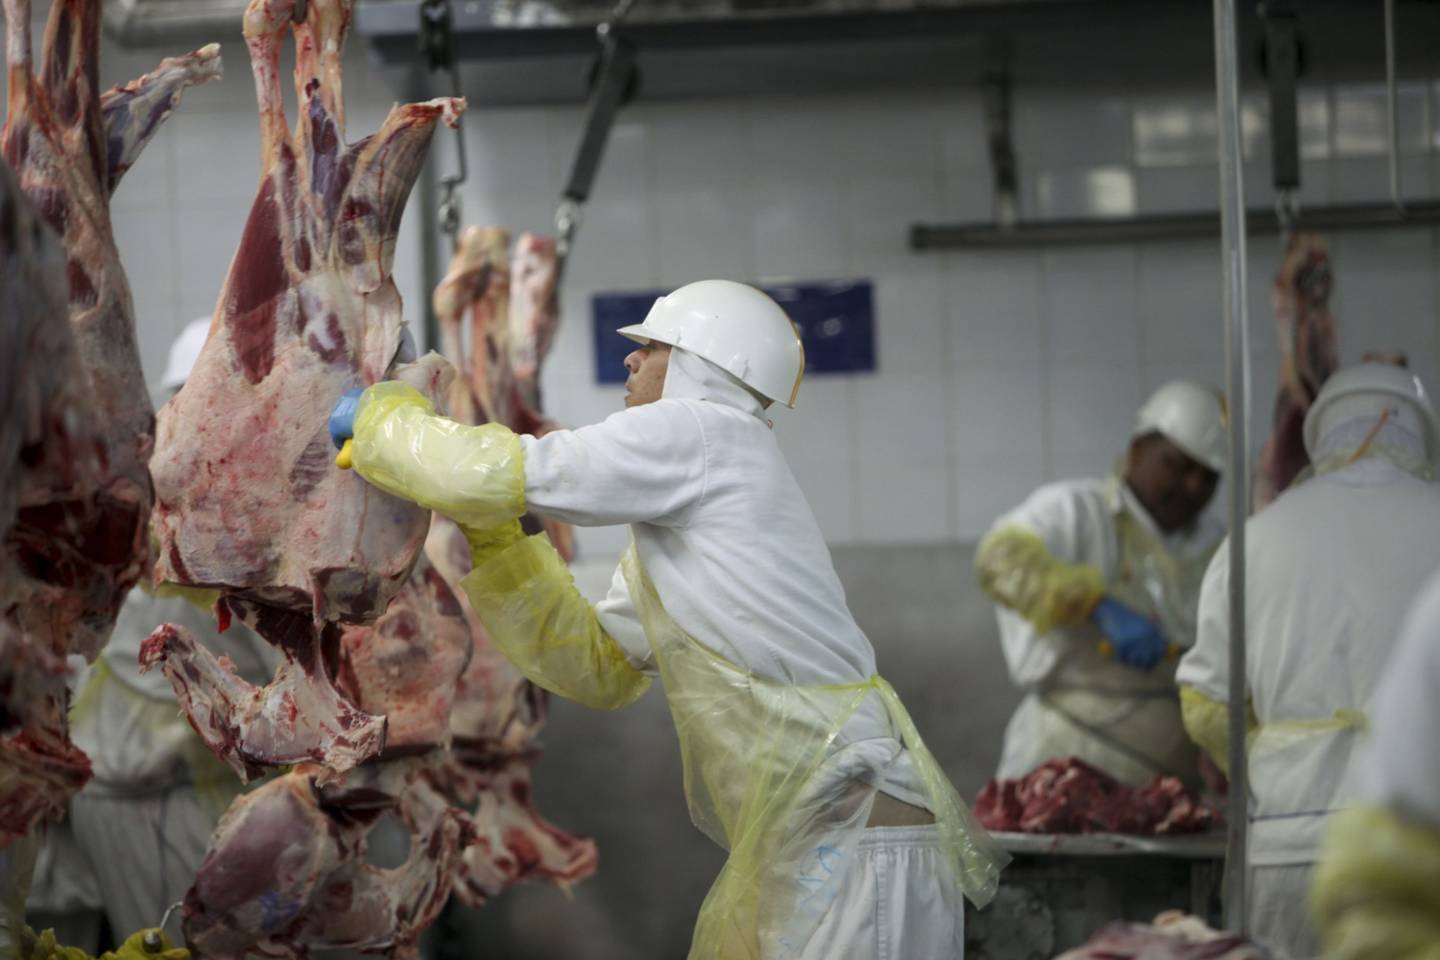 La carne que se vende a los consumidores pasa por controles sanitarios.